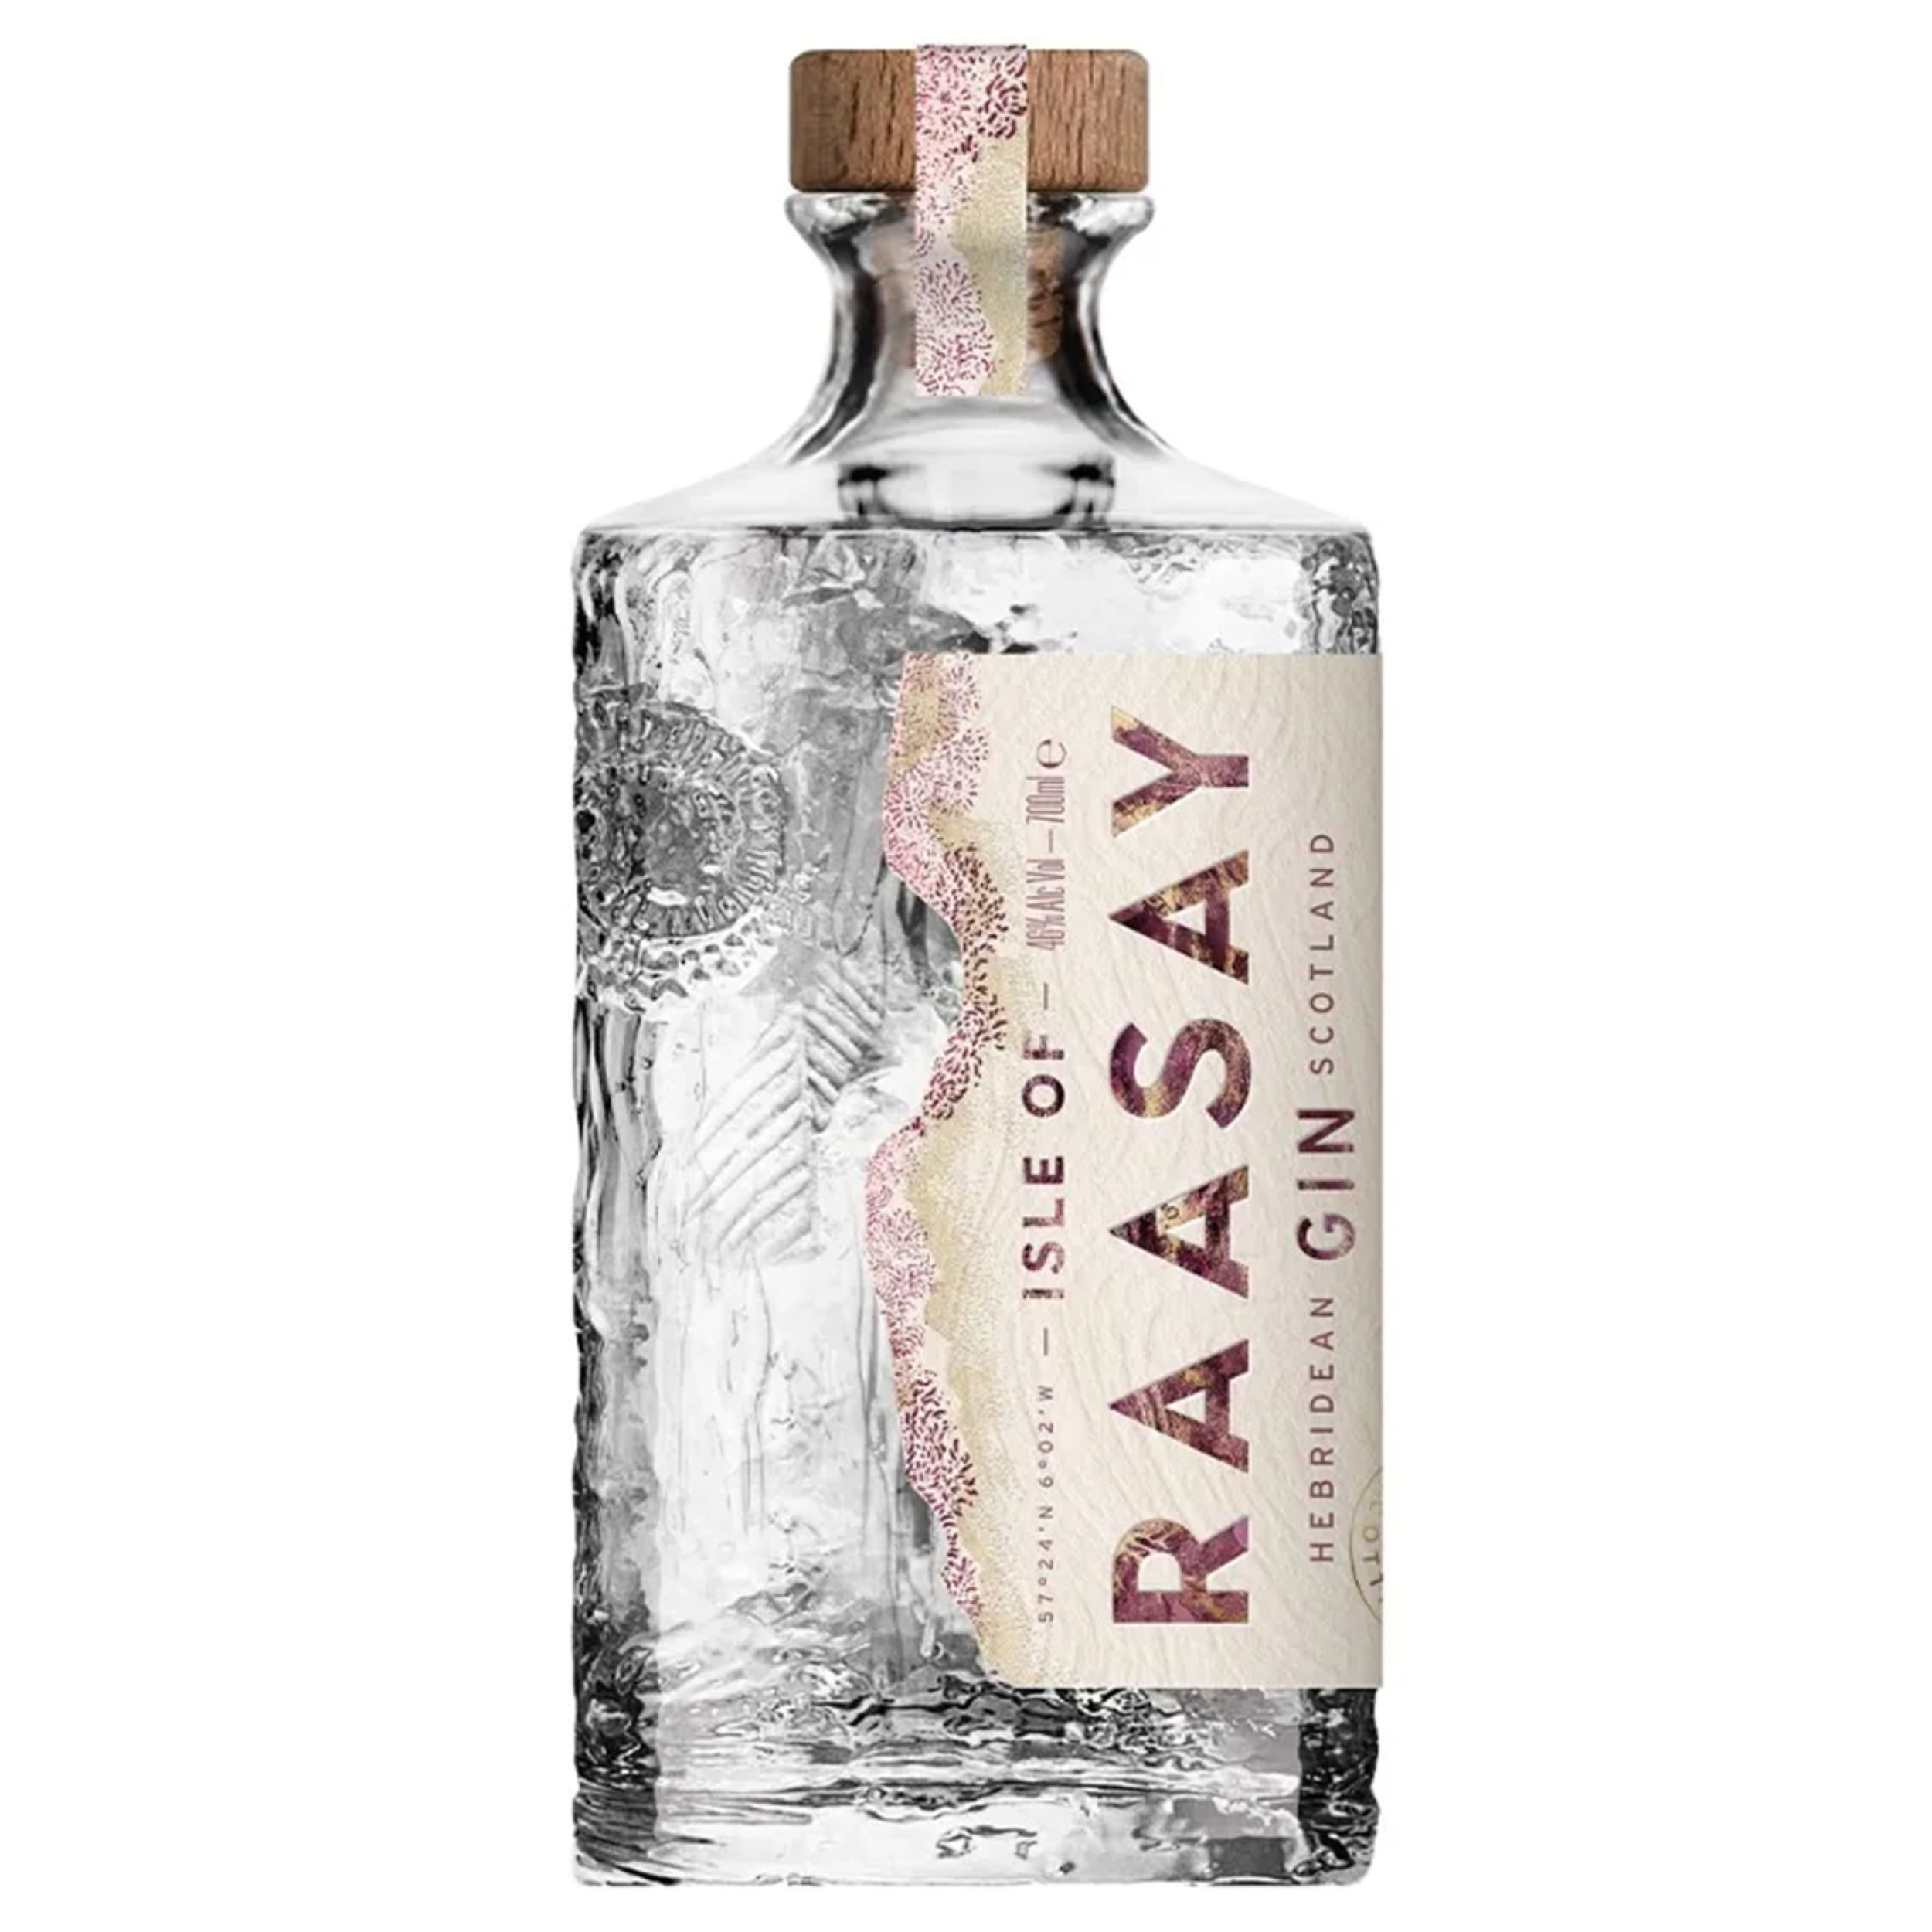 gin-raasay-isleofraasay